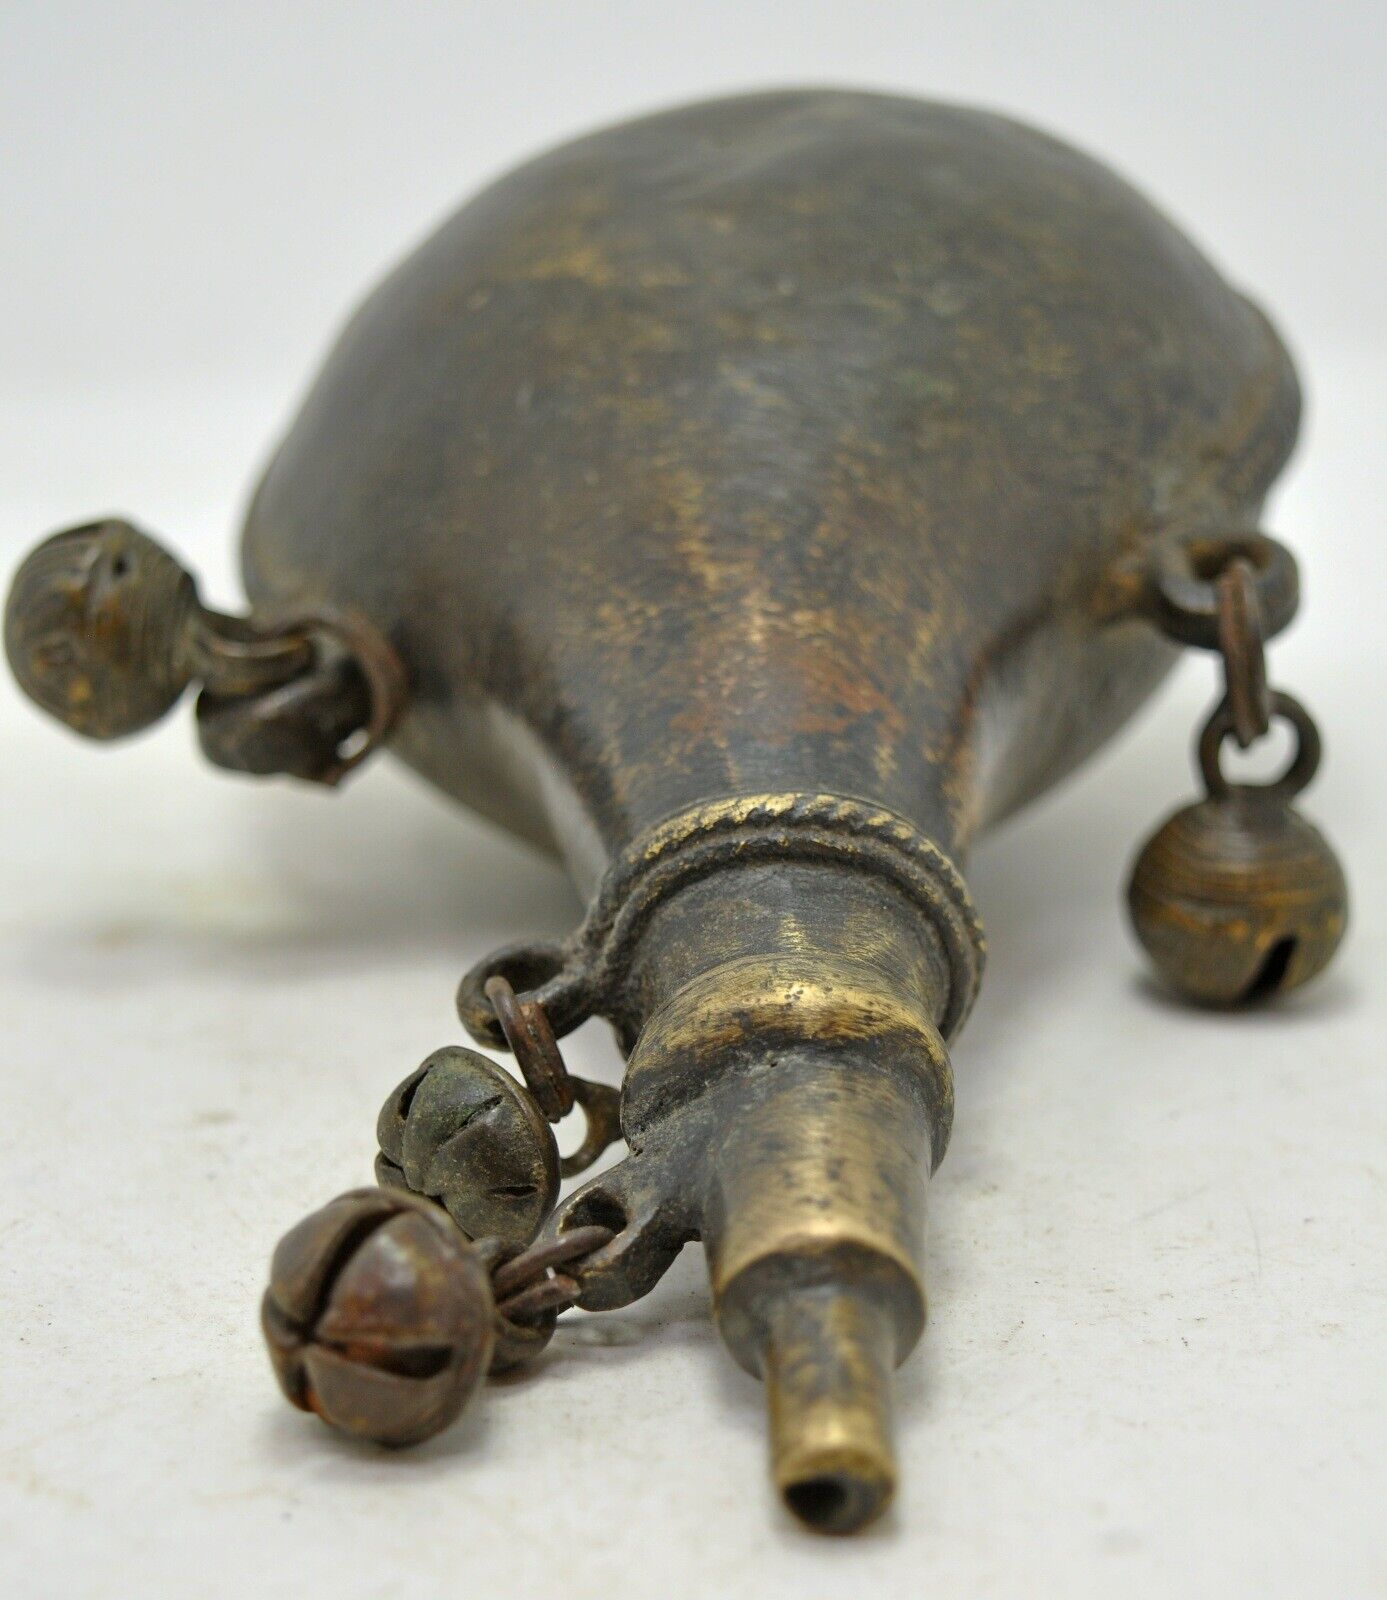 Antique Brass Gun Powder Flask Bottle Container Original Old Hand Engraved